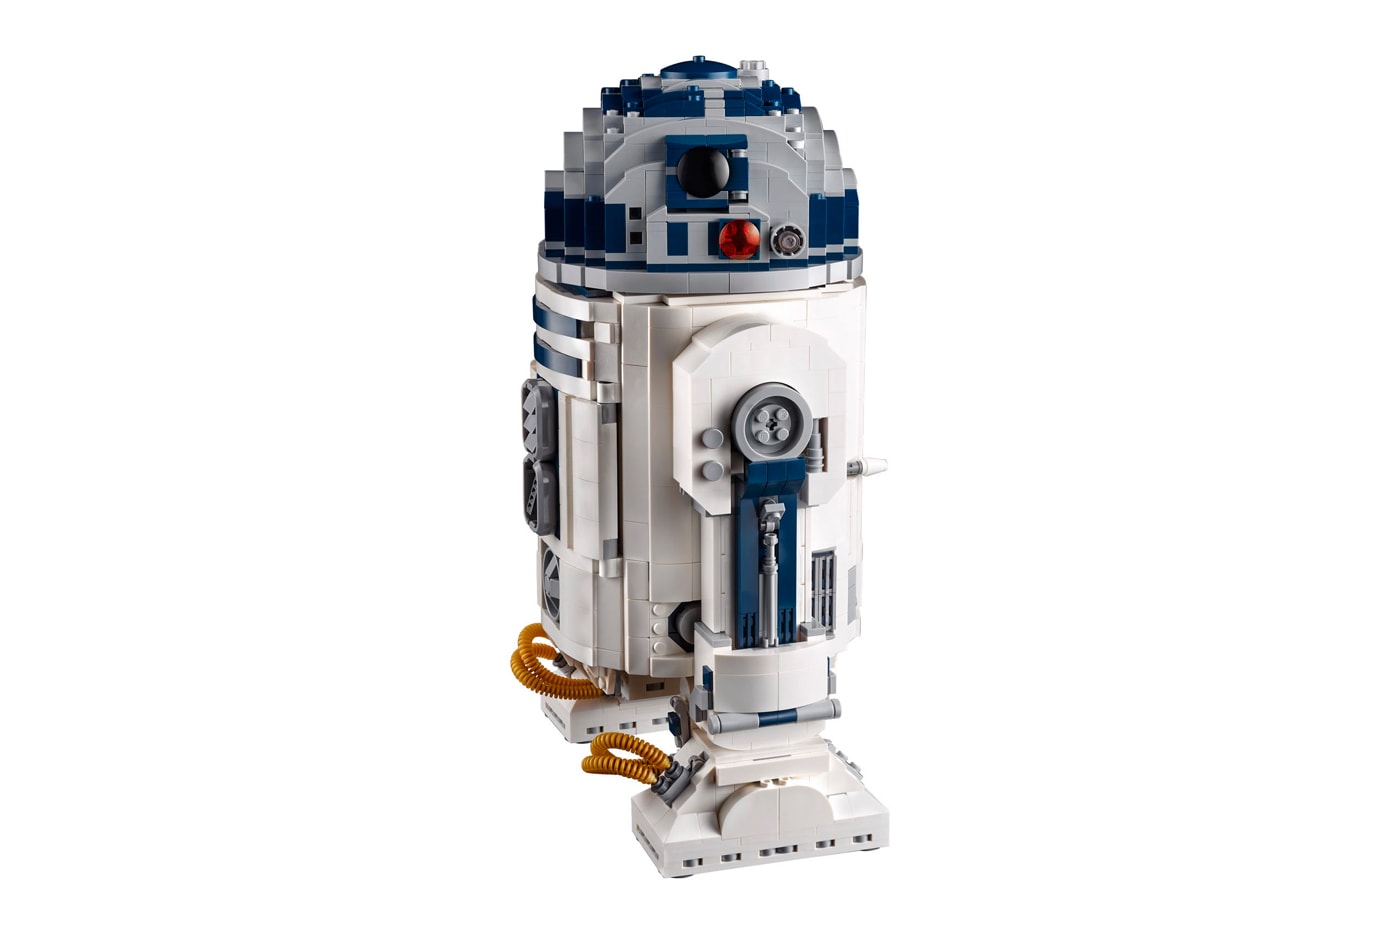 レゴからルーカスフィルム創立50周年を記念した R2-D2 の限定セットが登場 Star Wars LEGO R2 D2 Droid Figure lucasfilms george lucas 50th anniversary 2021 re issue model toy toy manufacturer info 75308